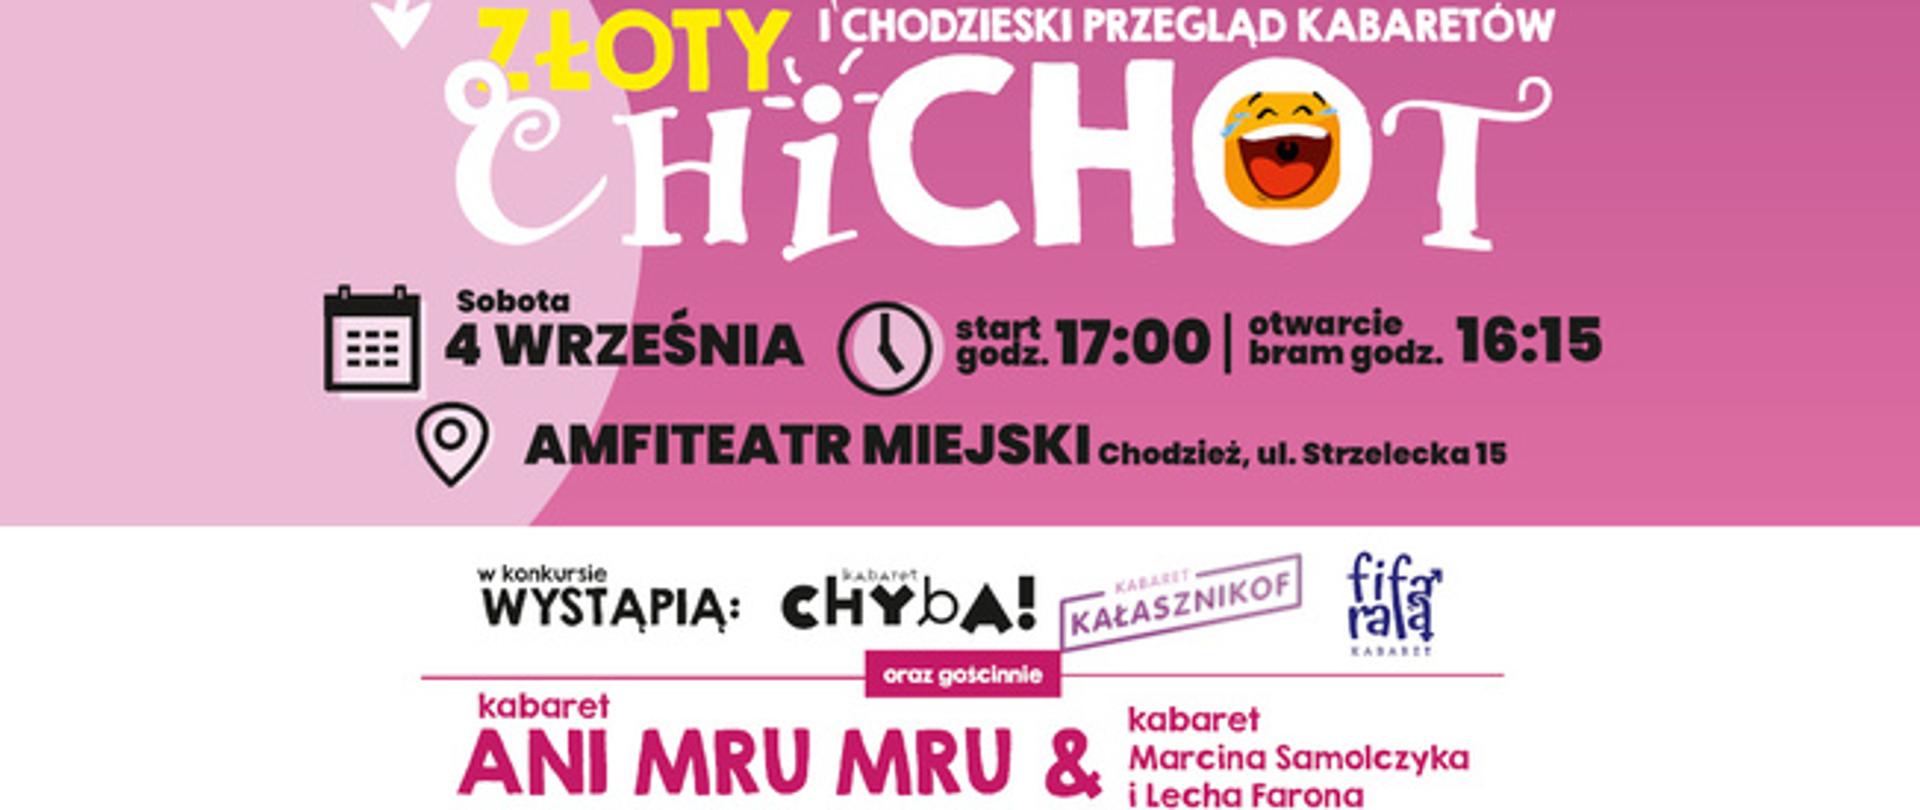 Plakat/ informacja o I. Chodzieskim Przeglądzie Kabaretów, 4 września br. w chodzieskim amfiteatrze